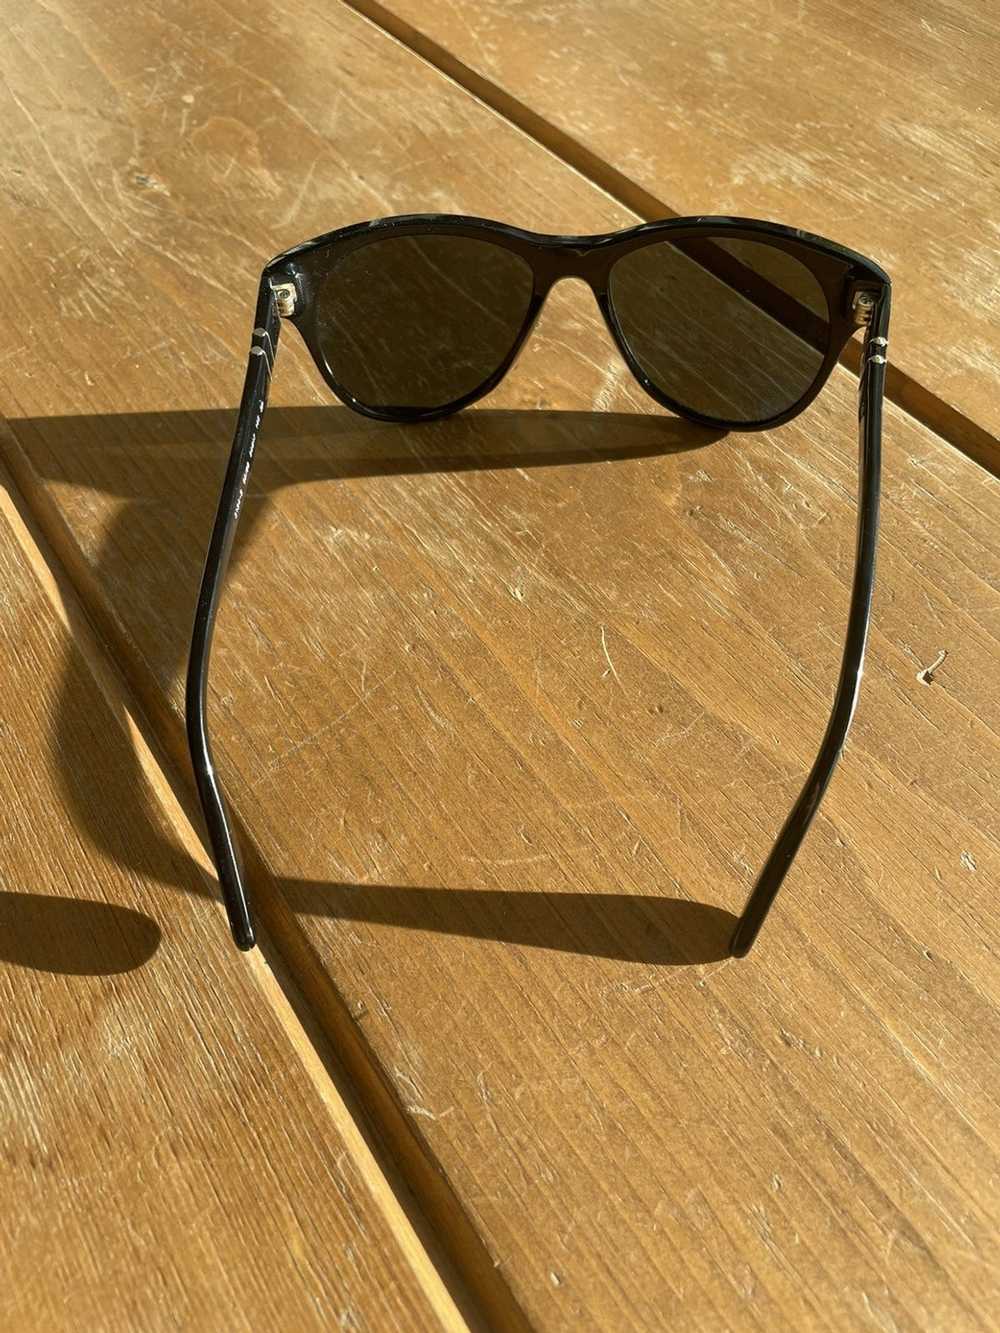 Persol Persol Polarized sunglasses - image 5